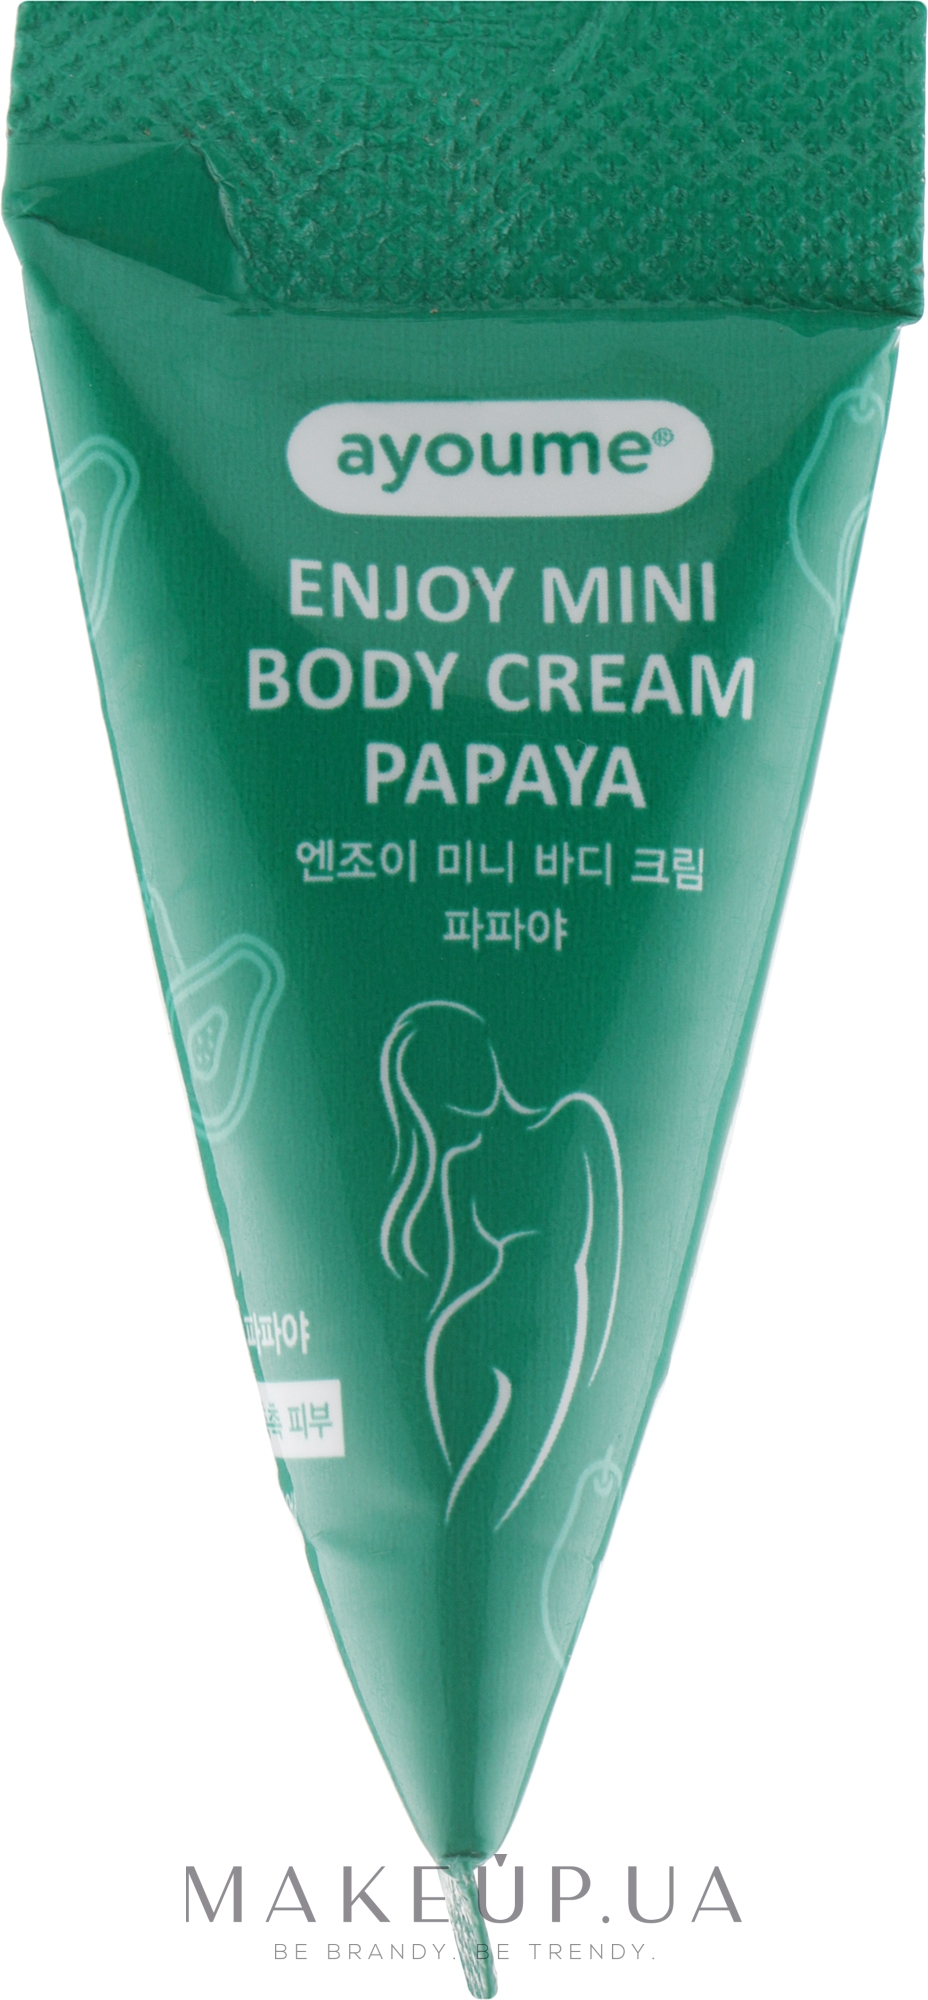 Raad Onderdrukken Catastrofaal Крем для тіла з екстрактом папайї - Ayoume Enjoy Mini Body Cream Papaya:  купити за найкращою ціною в Україні | Makeup.ua